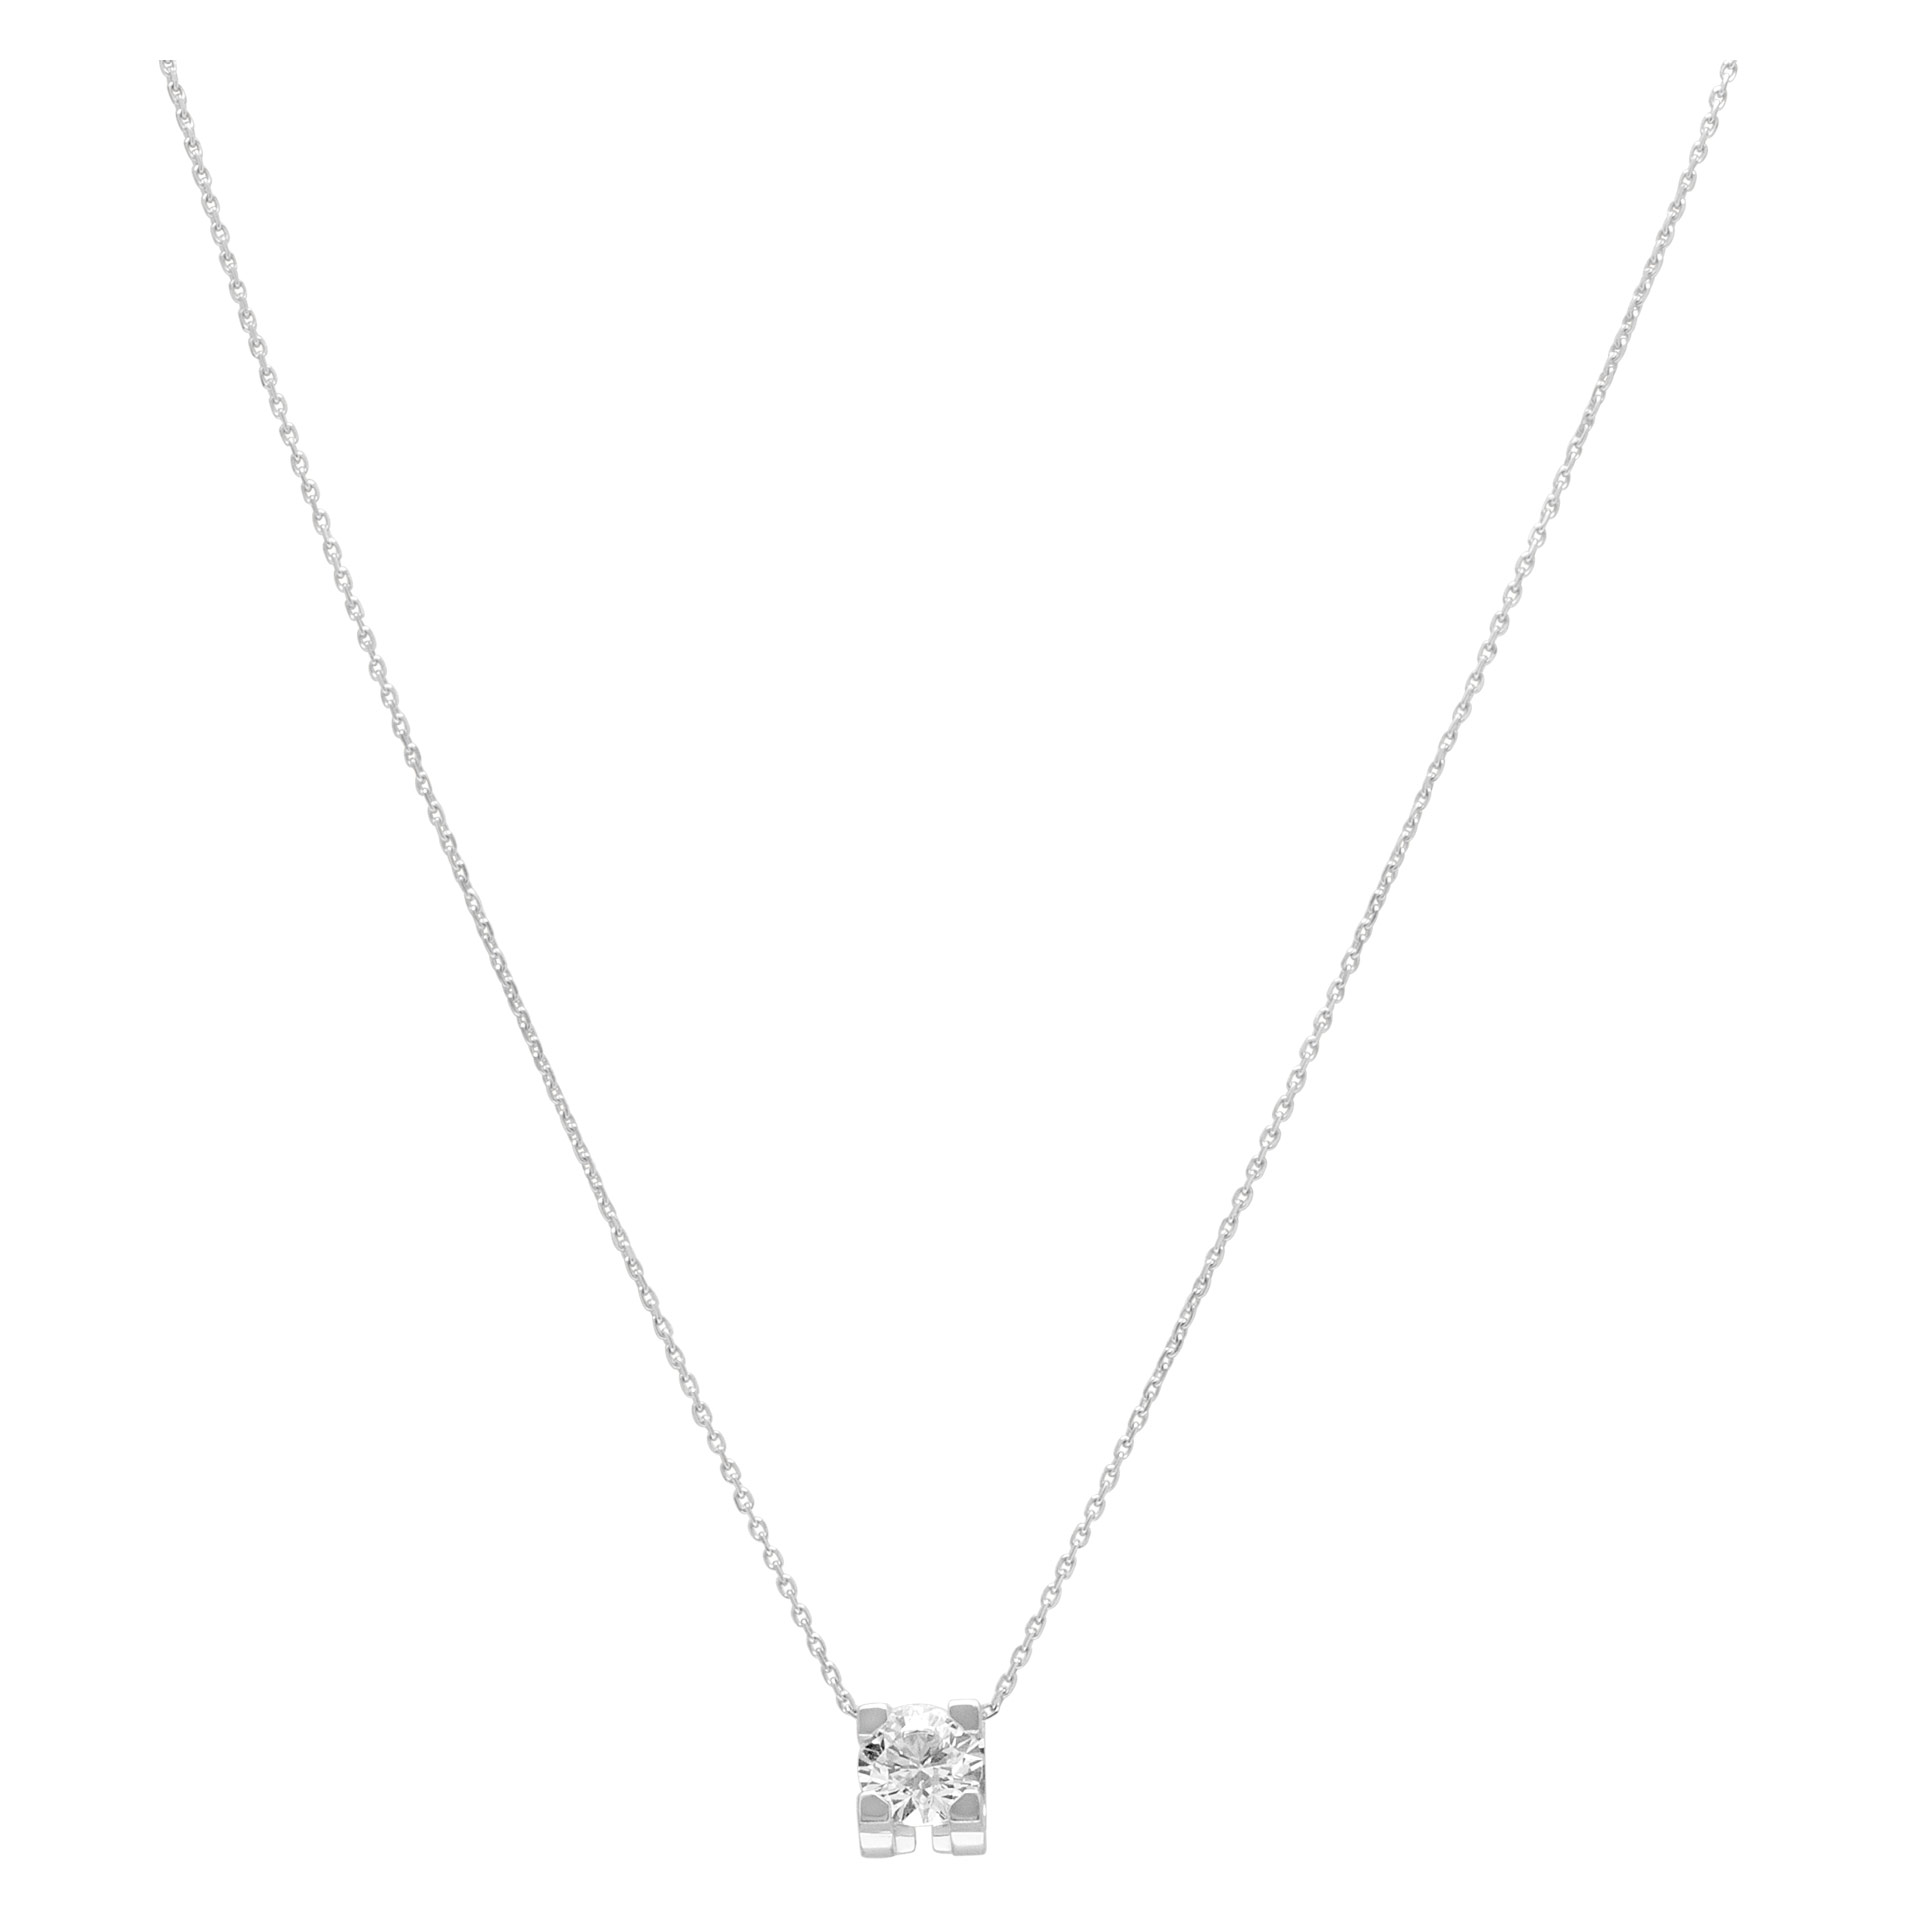 C de Cartier diamond pendant necklace in 18k white gold